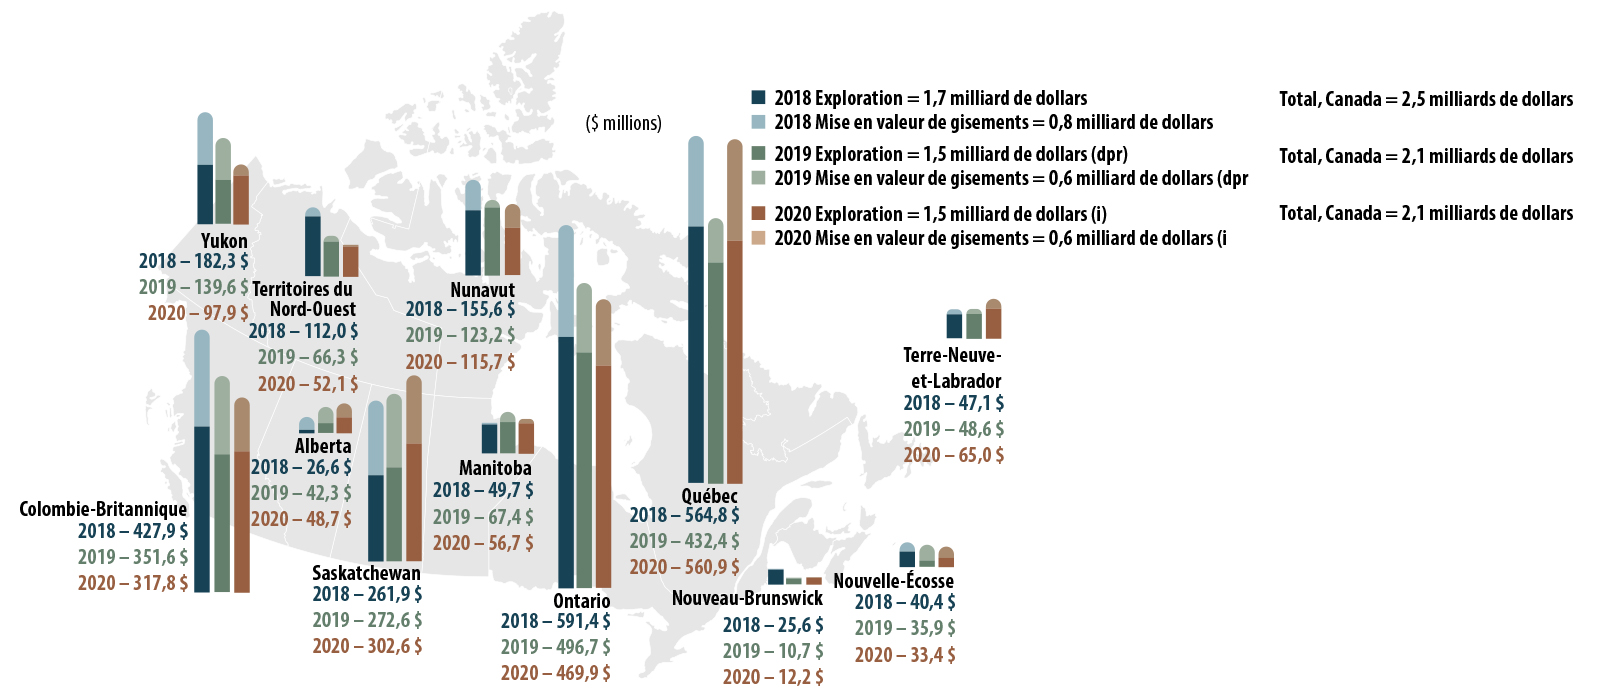 Dépenses d’exploration et de mise en valeur de gisements, par province et par territoire, de 2018 à 2020 (i))